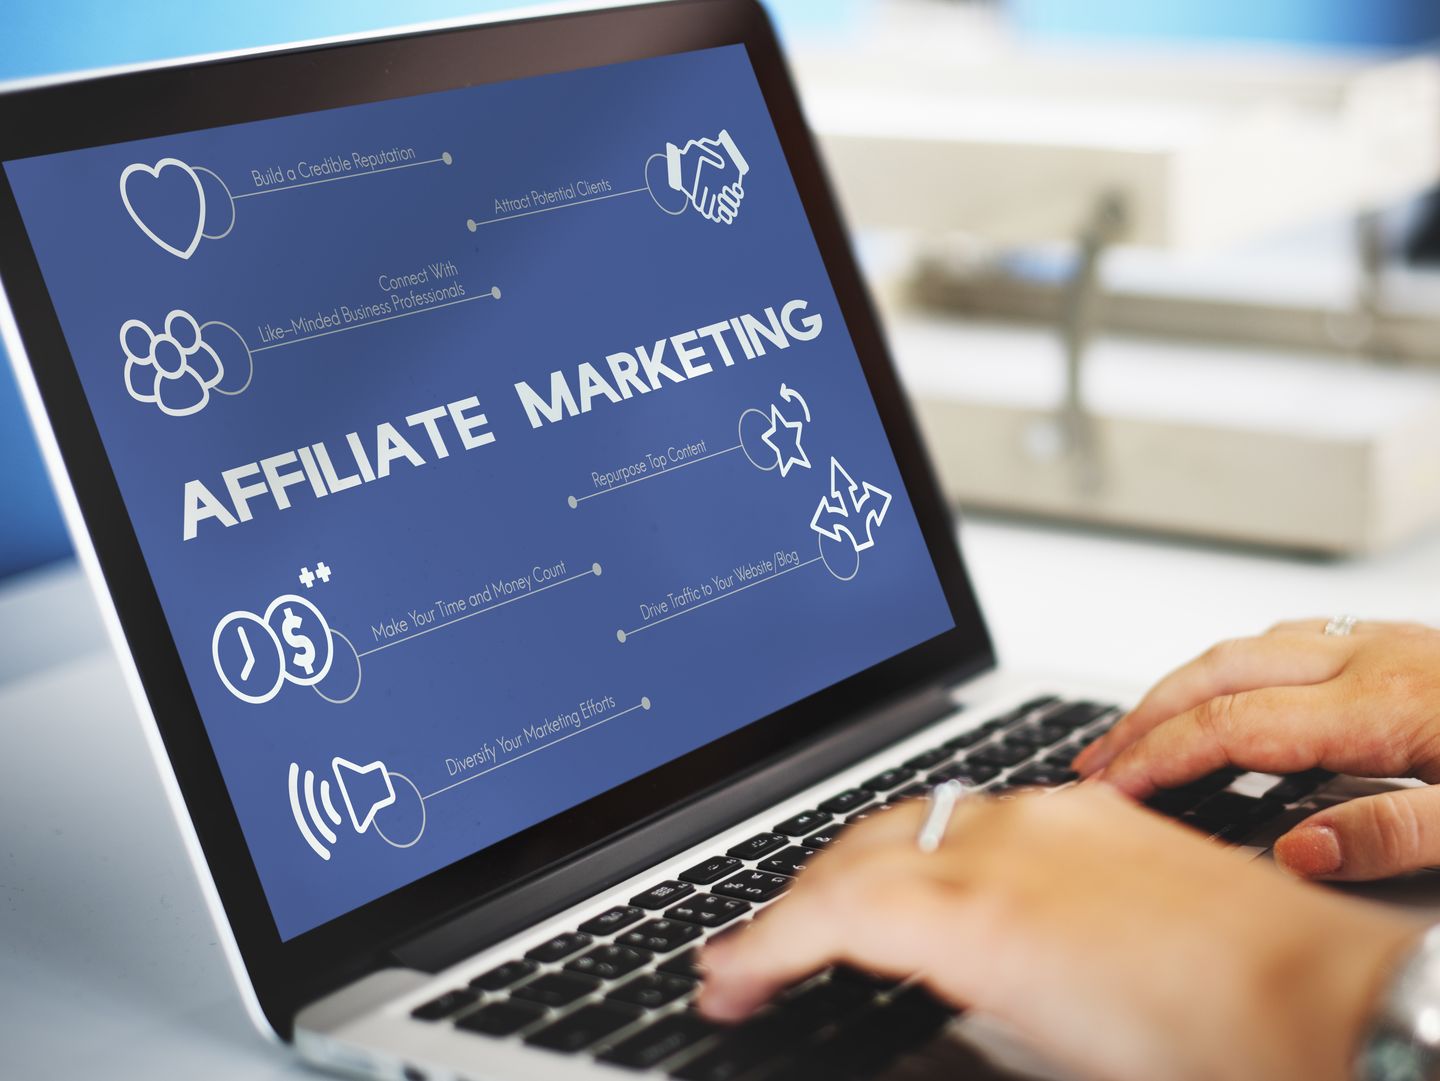 Menggunakan media sosial adalah salah satu strategi dalam menjalankan affiliate marketing.